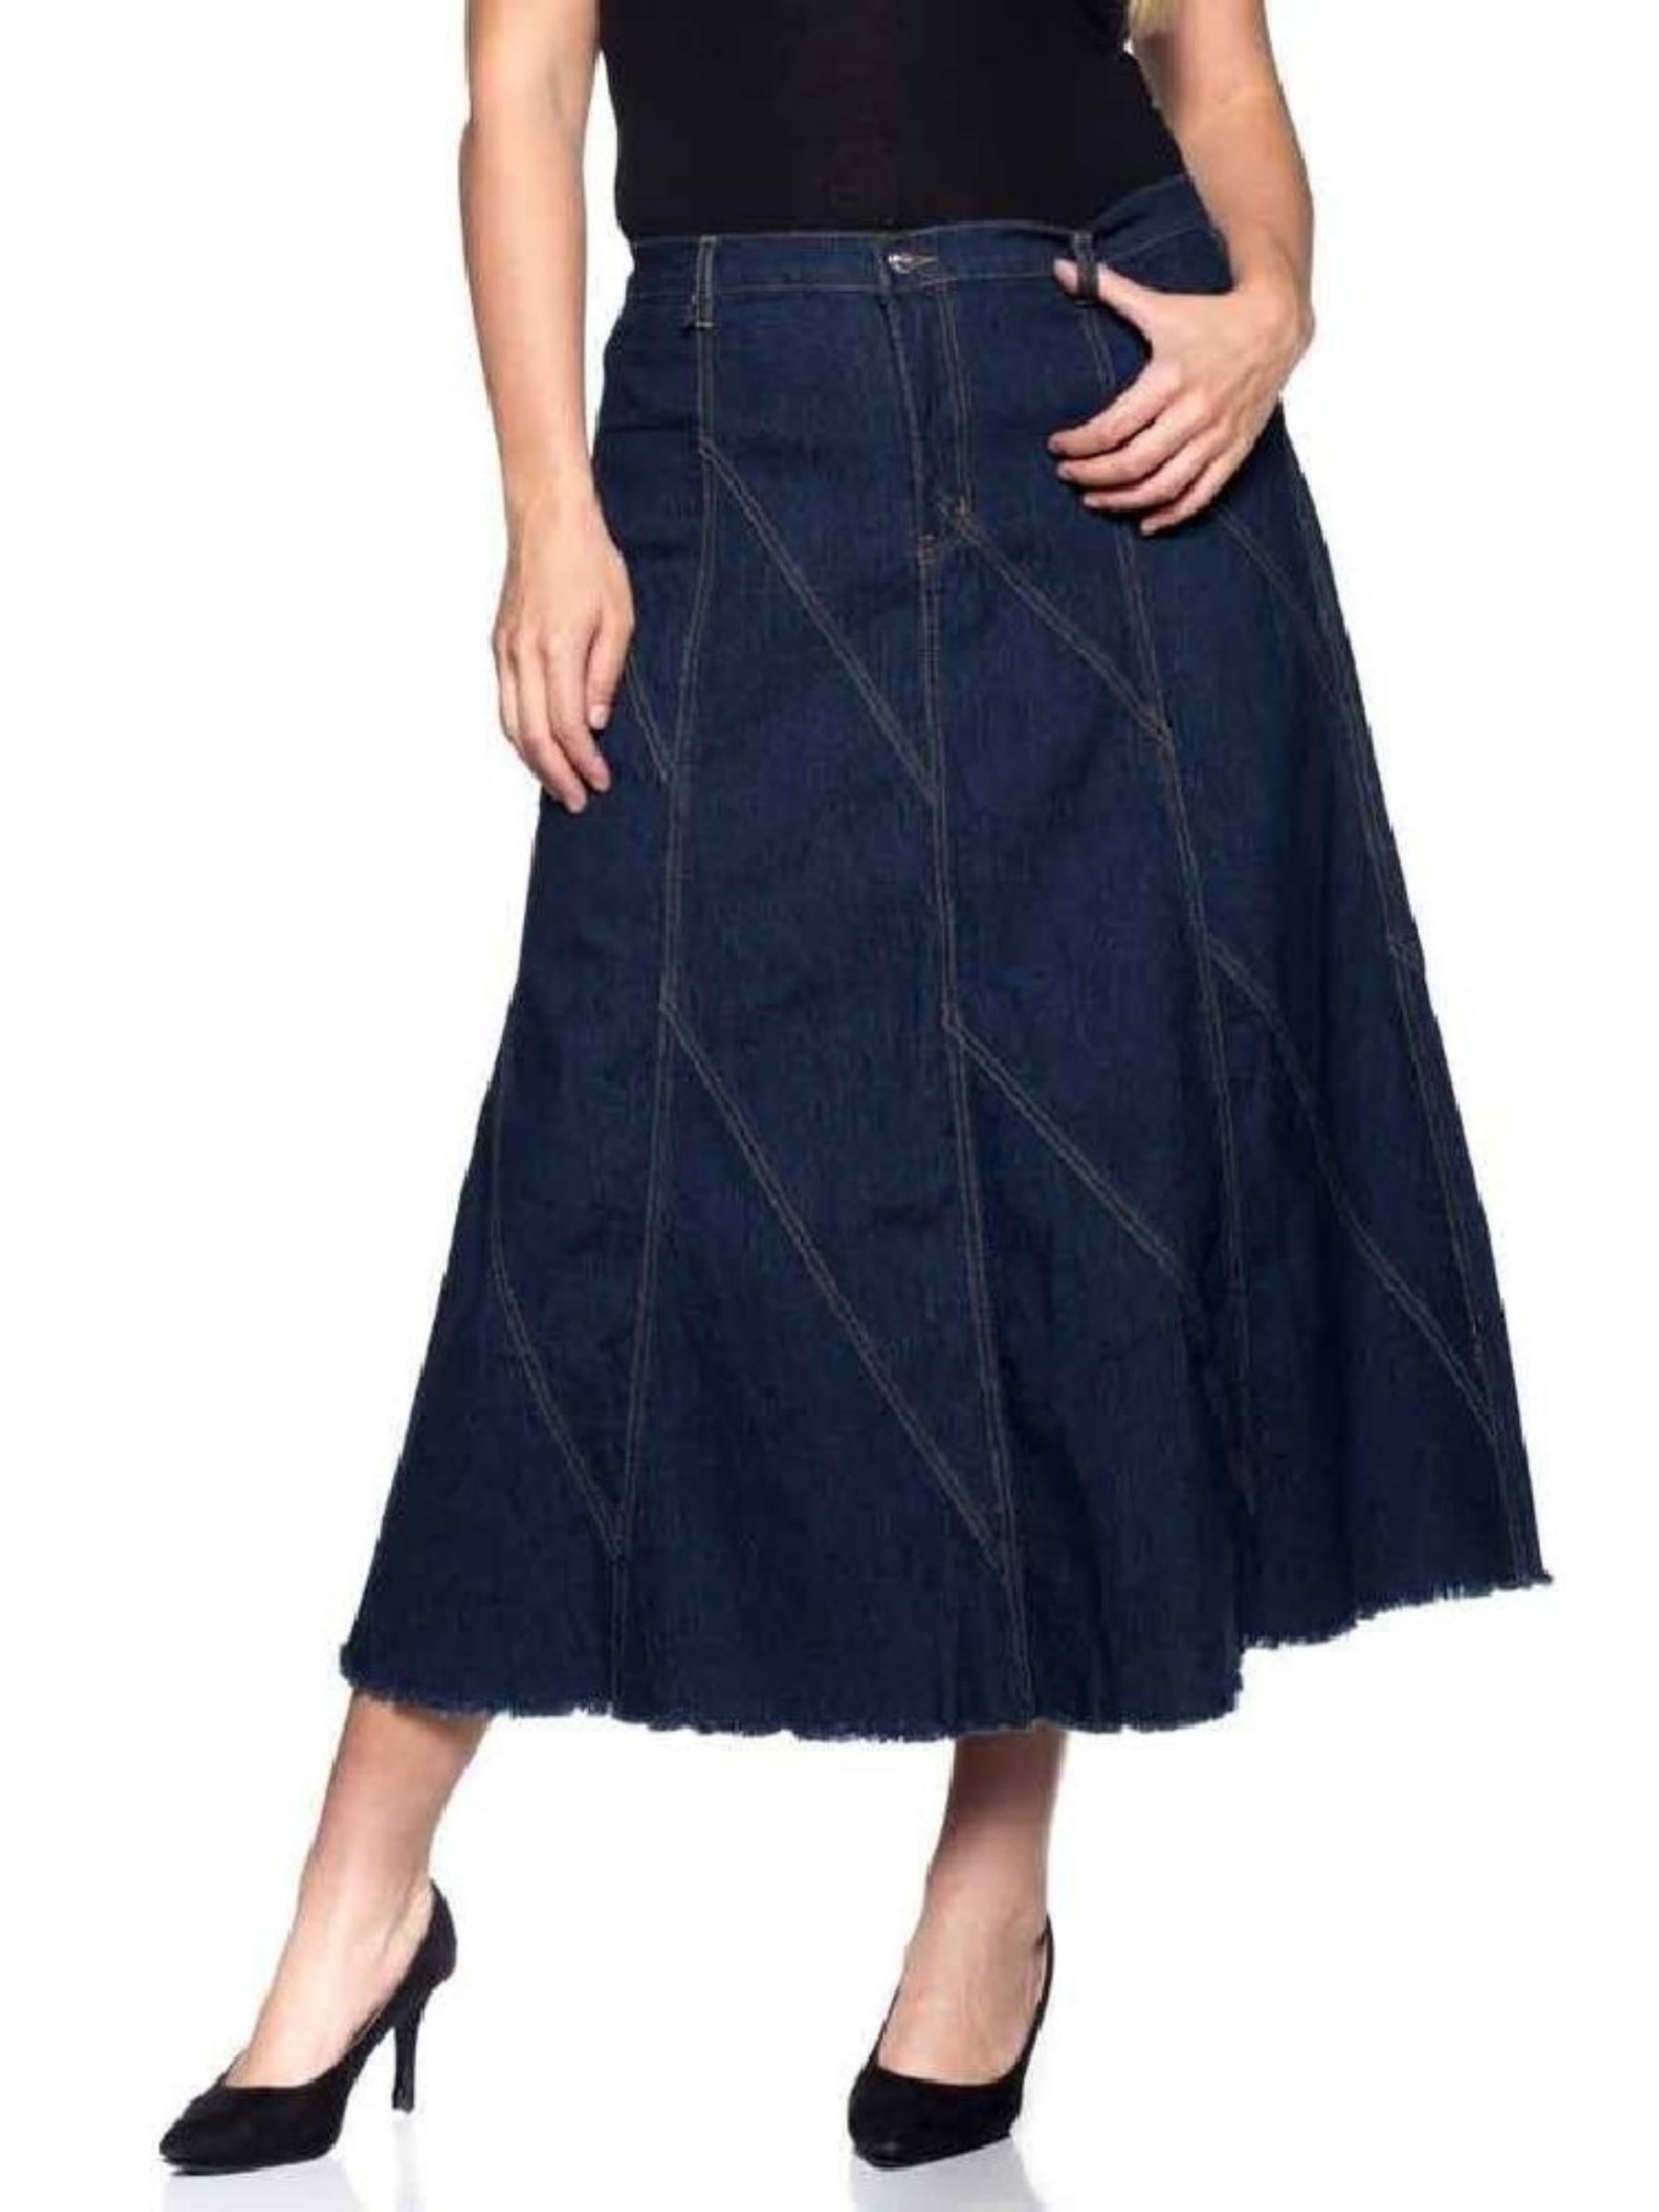 Long denim skirts for women